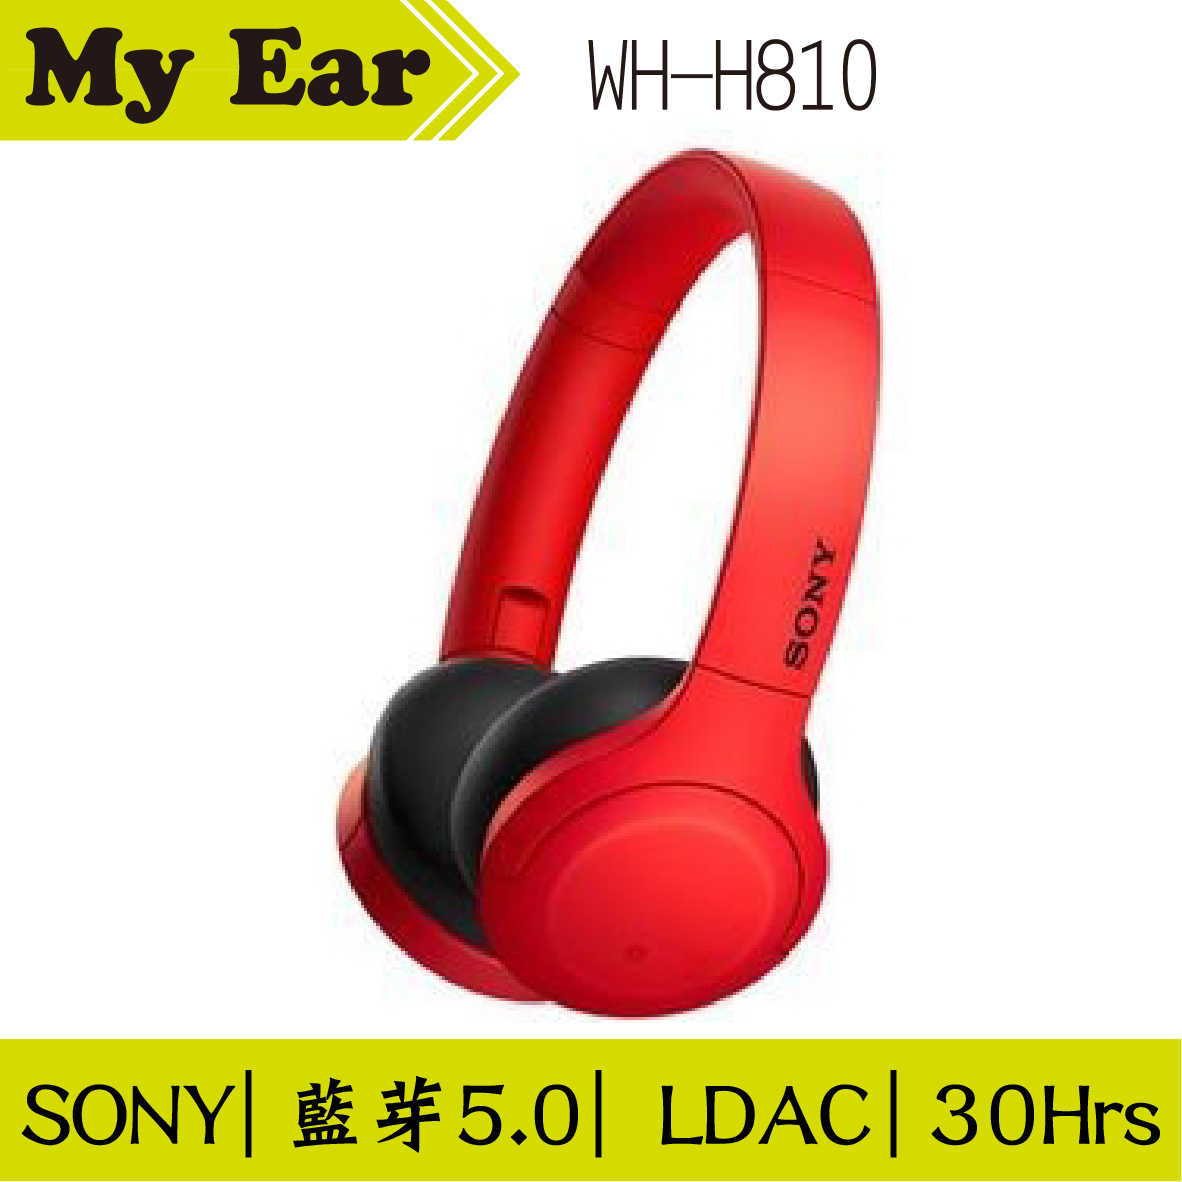 SONY WH-H810 h.ear 藍芽 耳罩式 耳機 紅色 | My Ear 耳機專門店